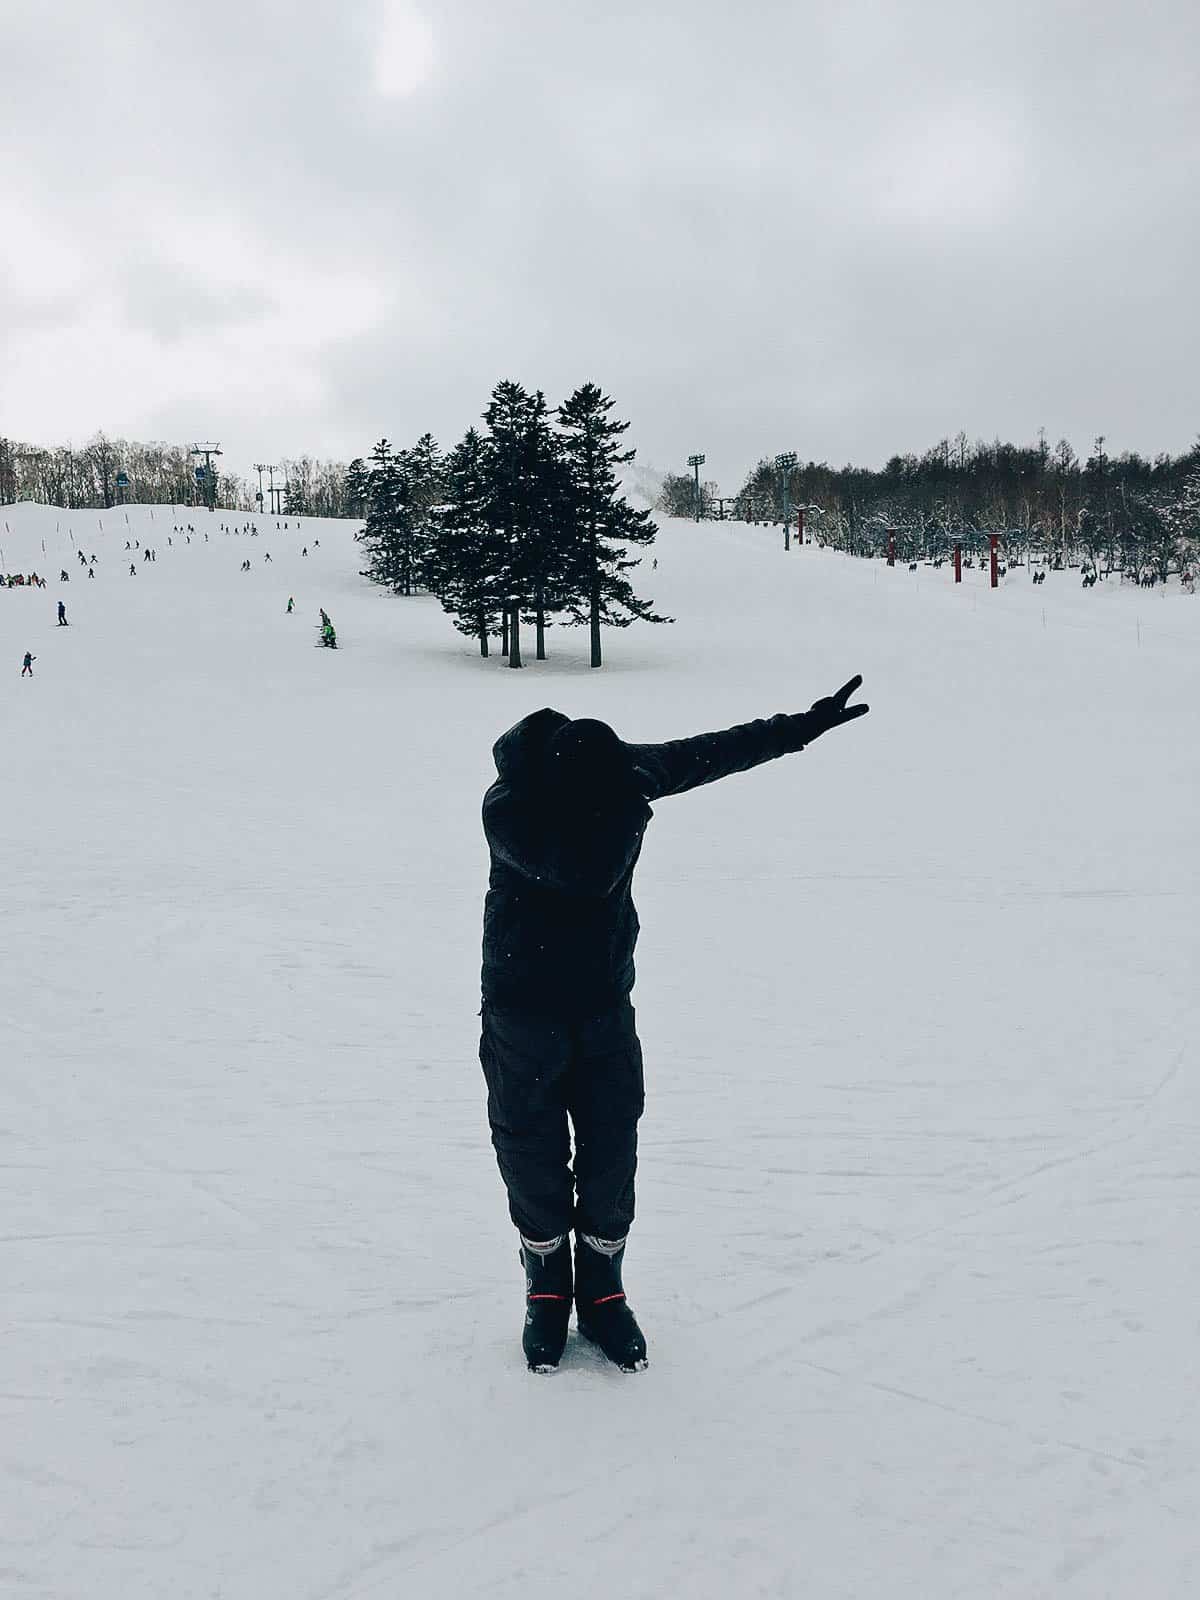 Sapporo Teine: Where to Go Skiing Near Sapporo